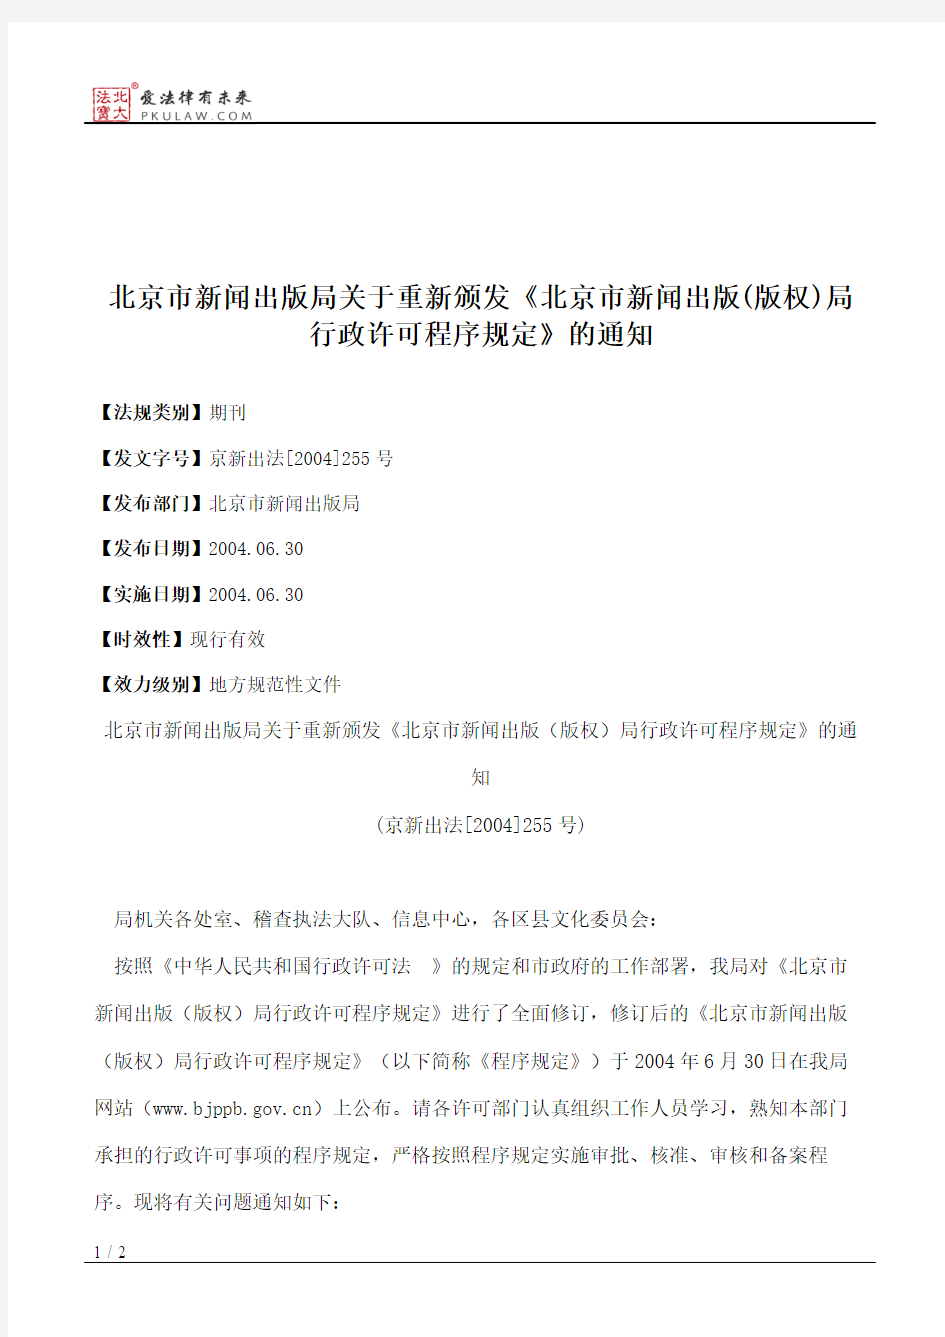 北京市新闻出版局关于重新颁发《北京市新闻出版(版权)局行政许可